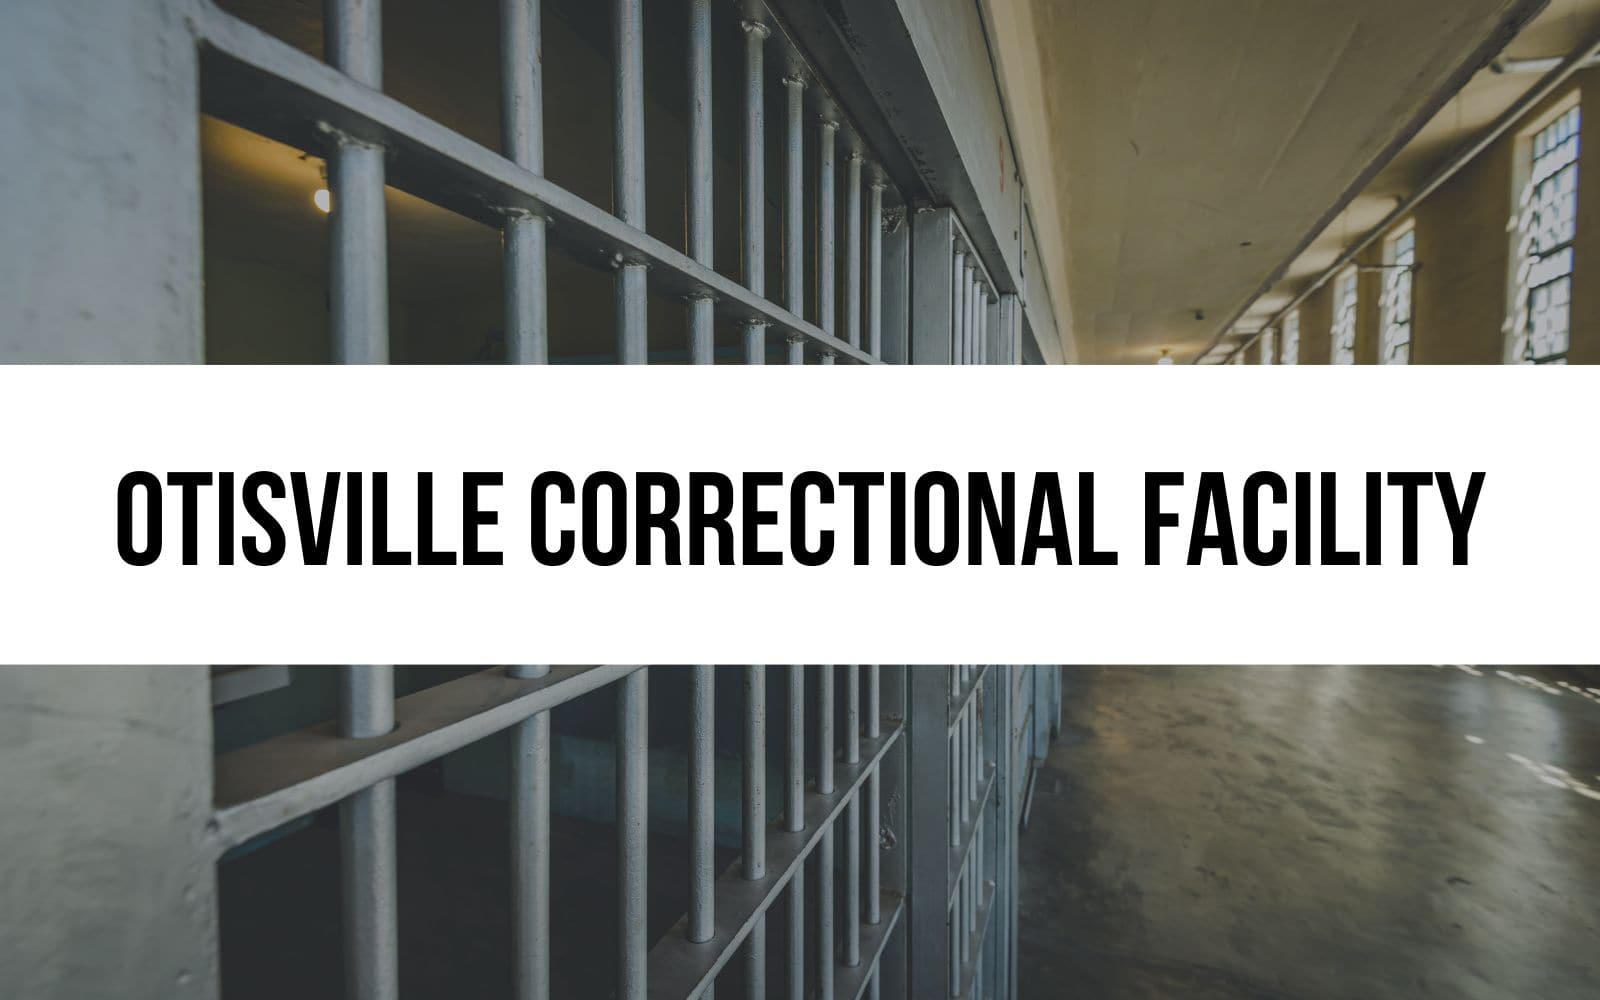 Otisville Correctional Facility